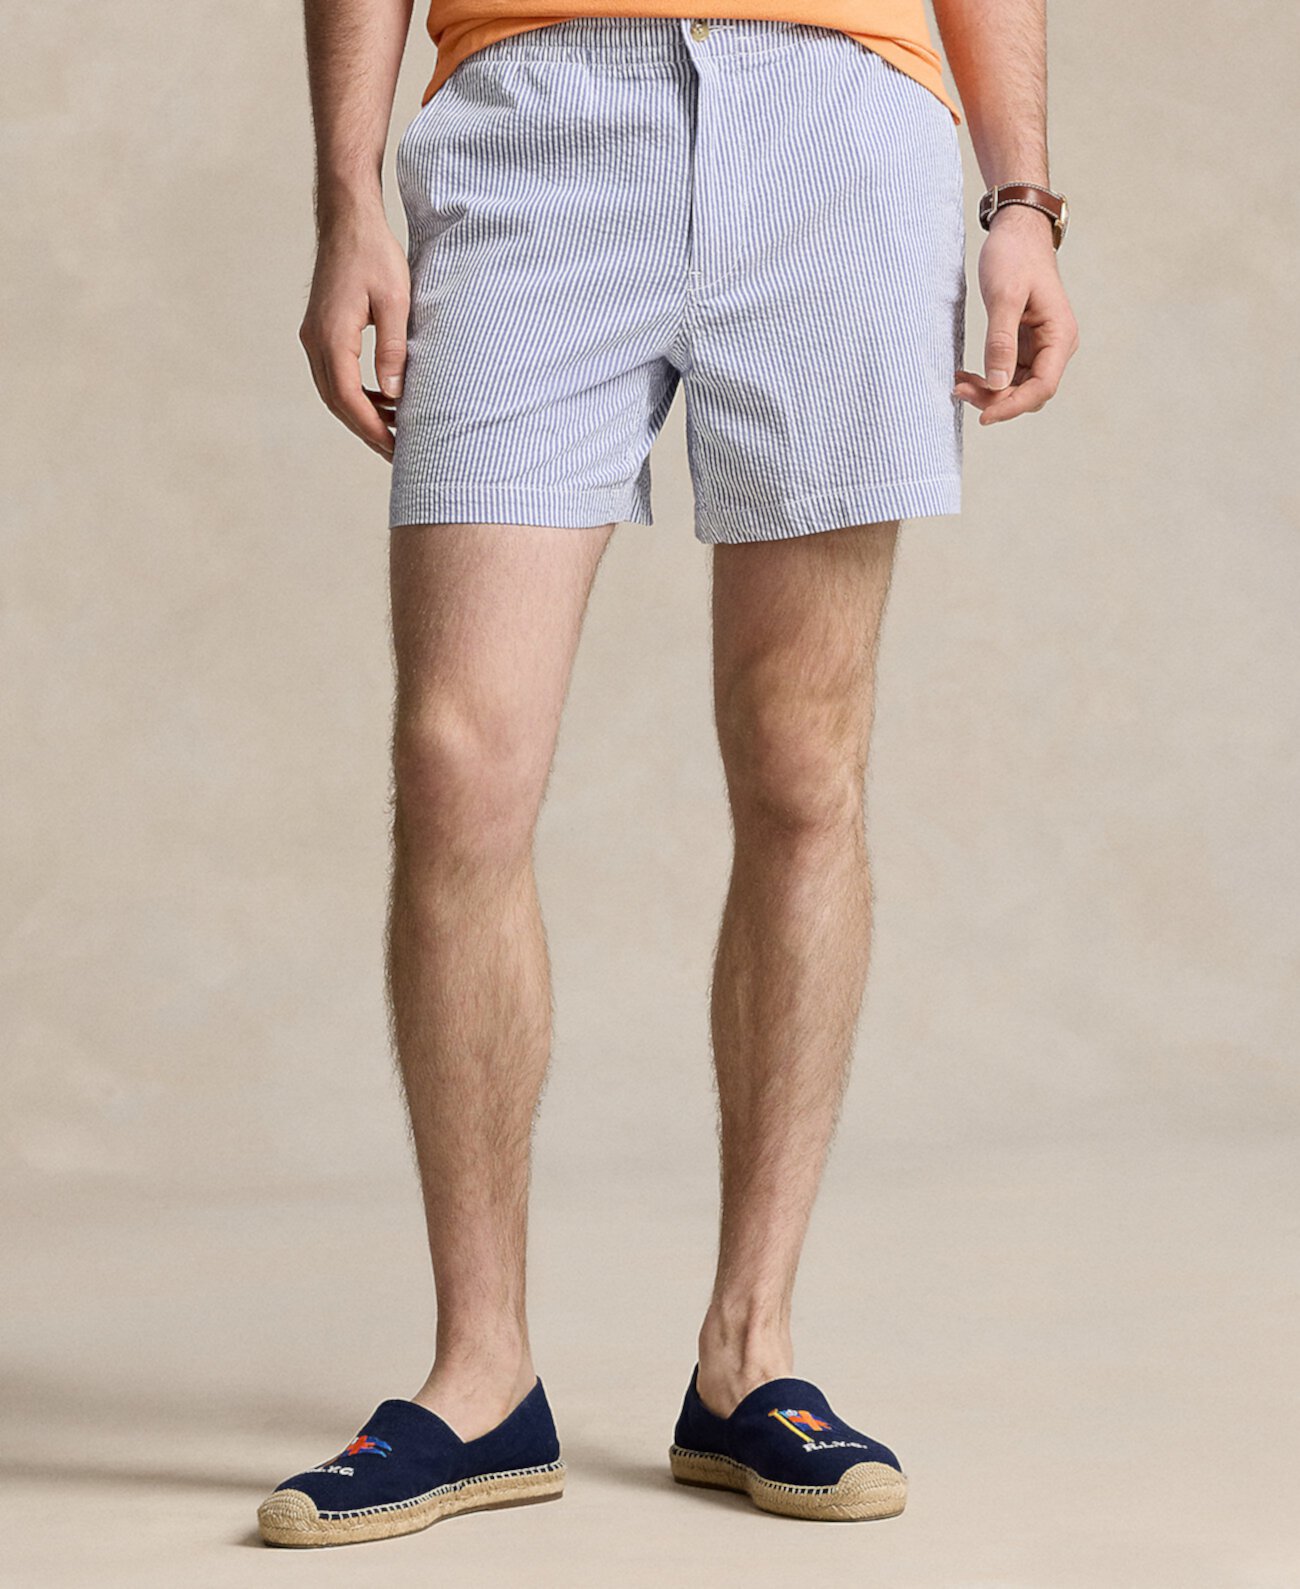 Мужские шорты-поло Prepster из жатого хлопка шириной 6 дюймов Polo Ralph Lauren